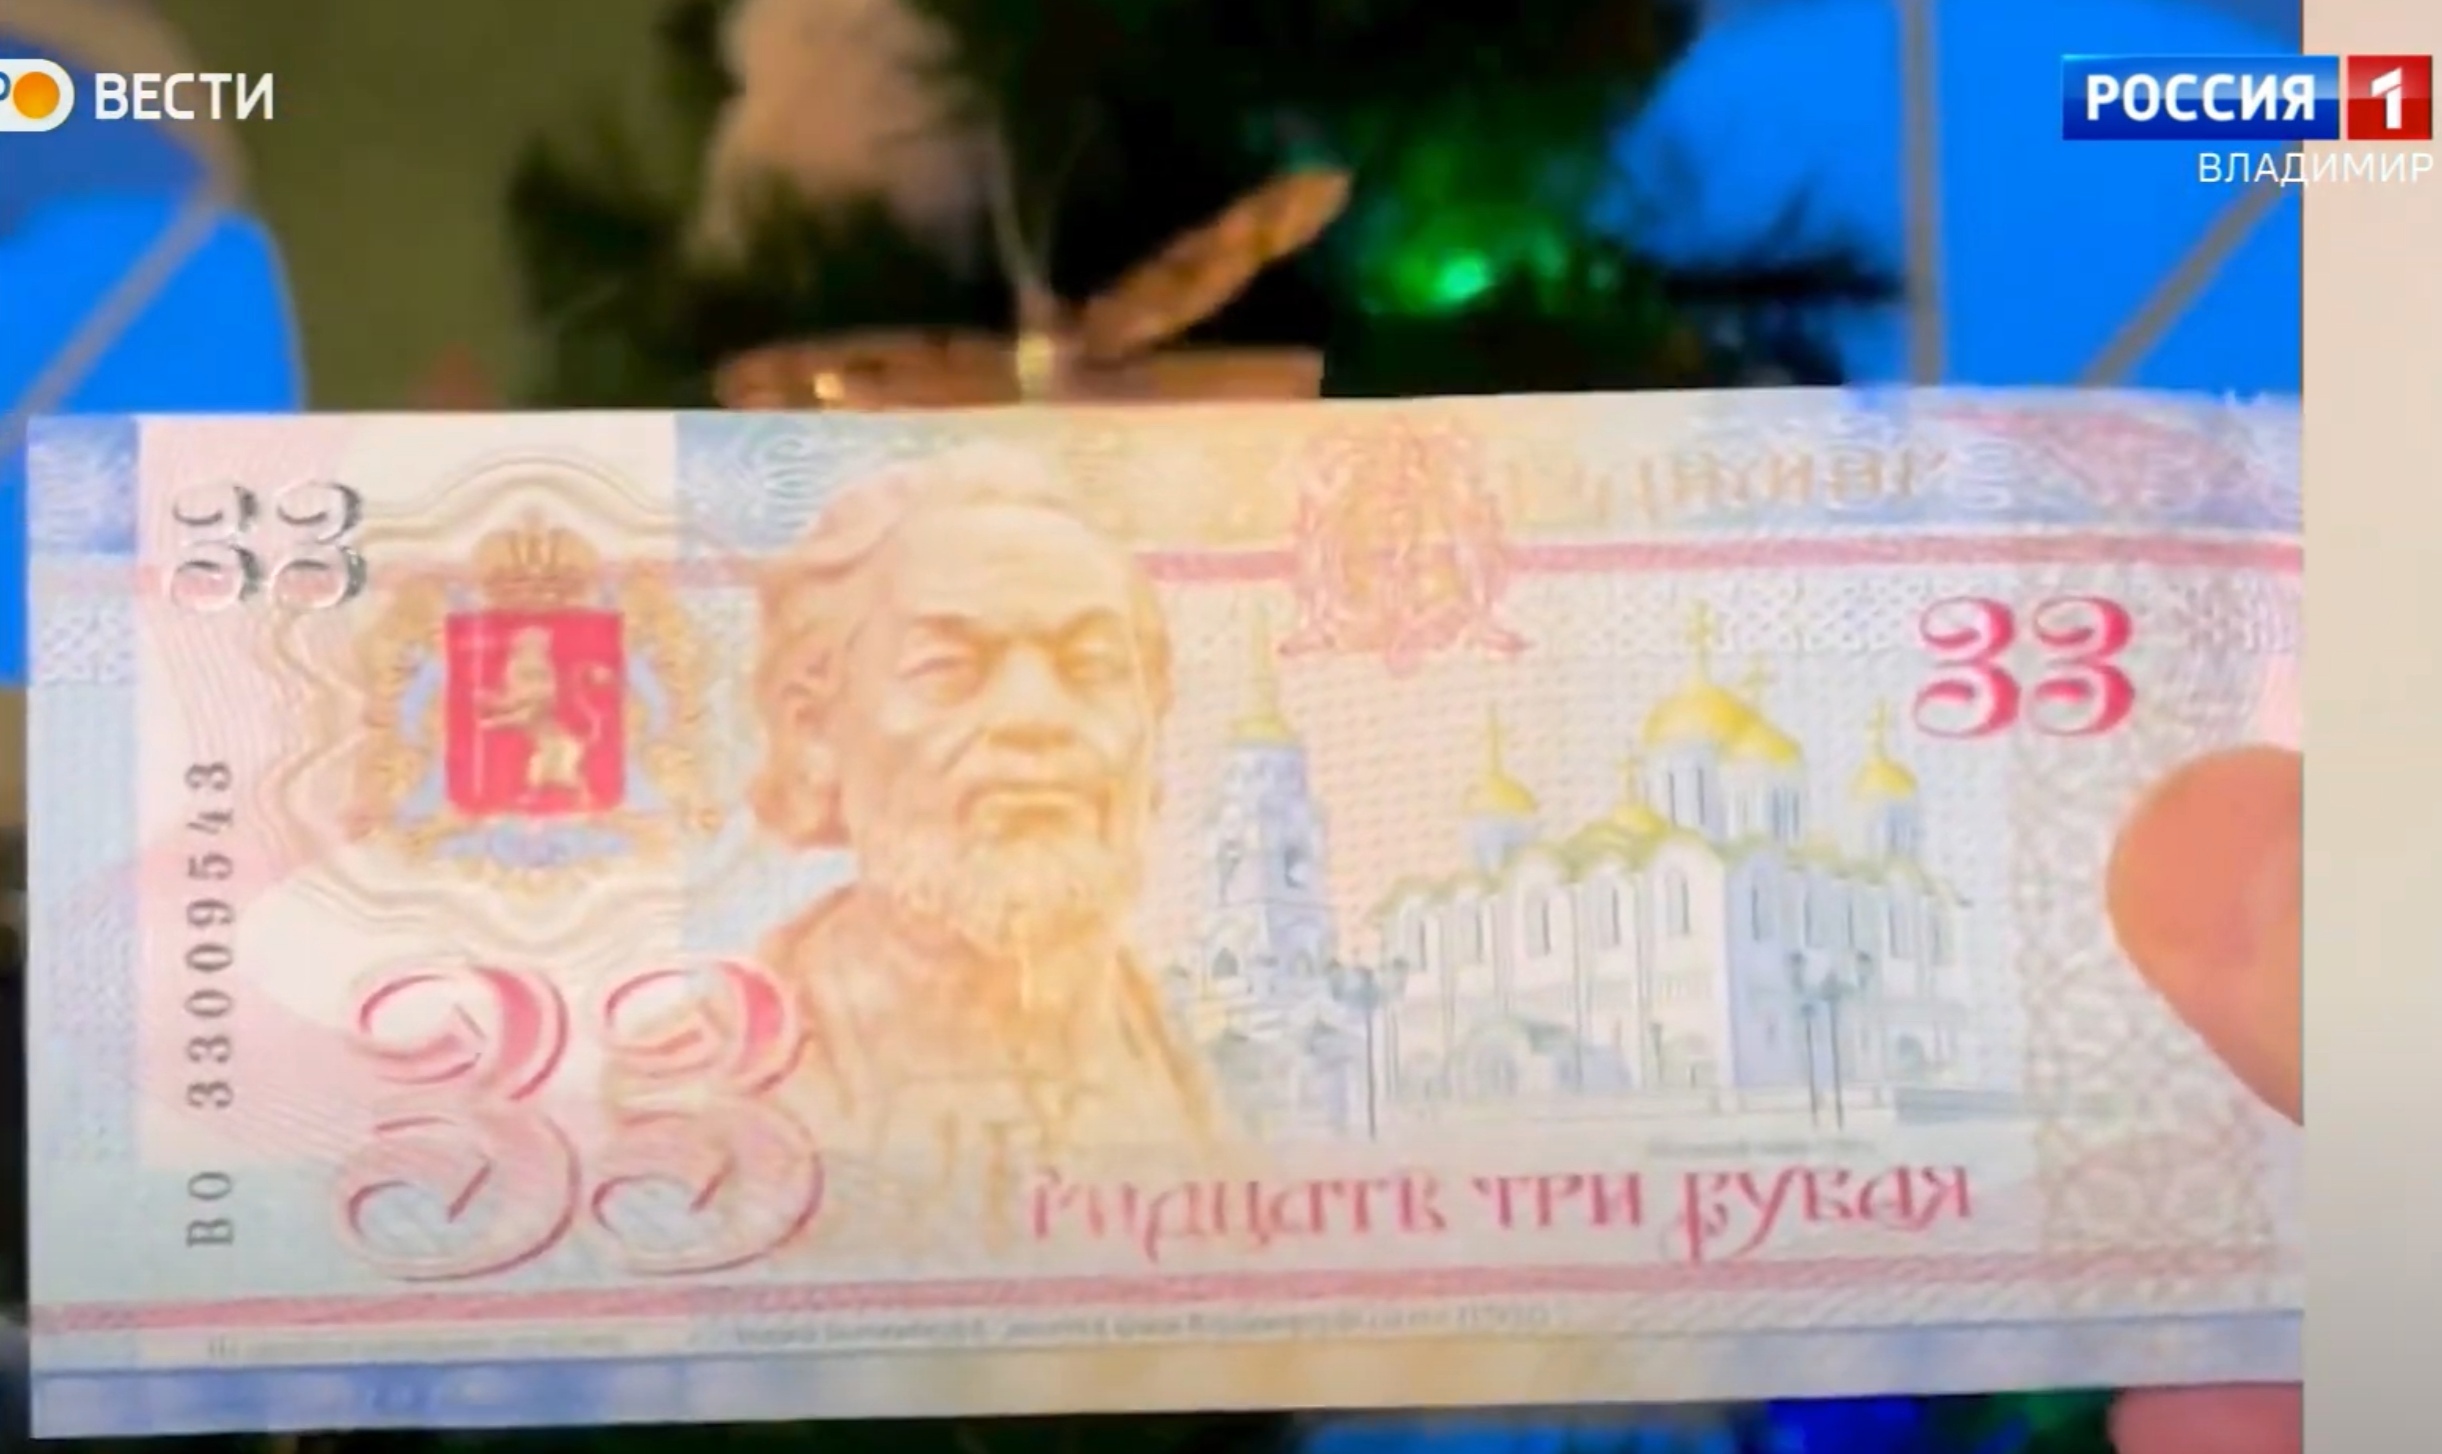 33 рубля